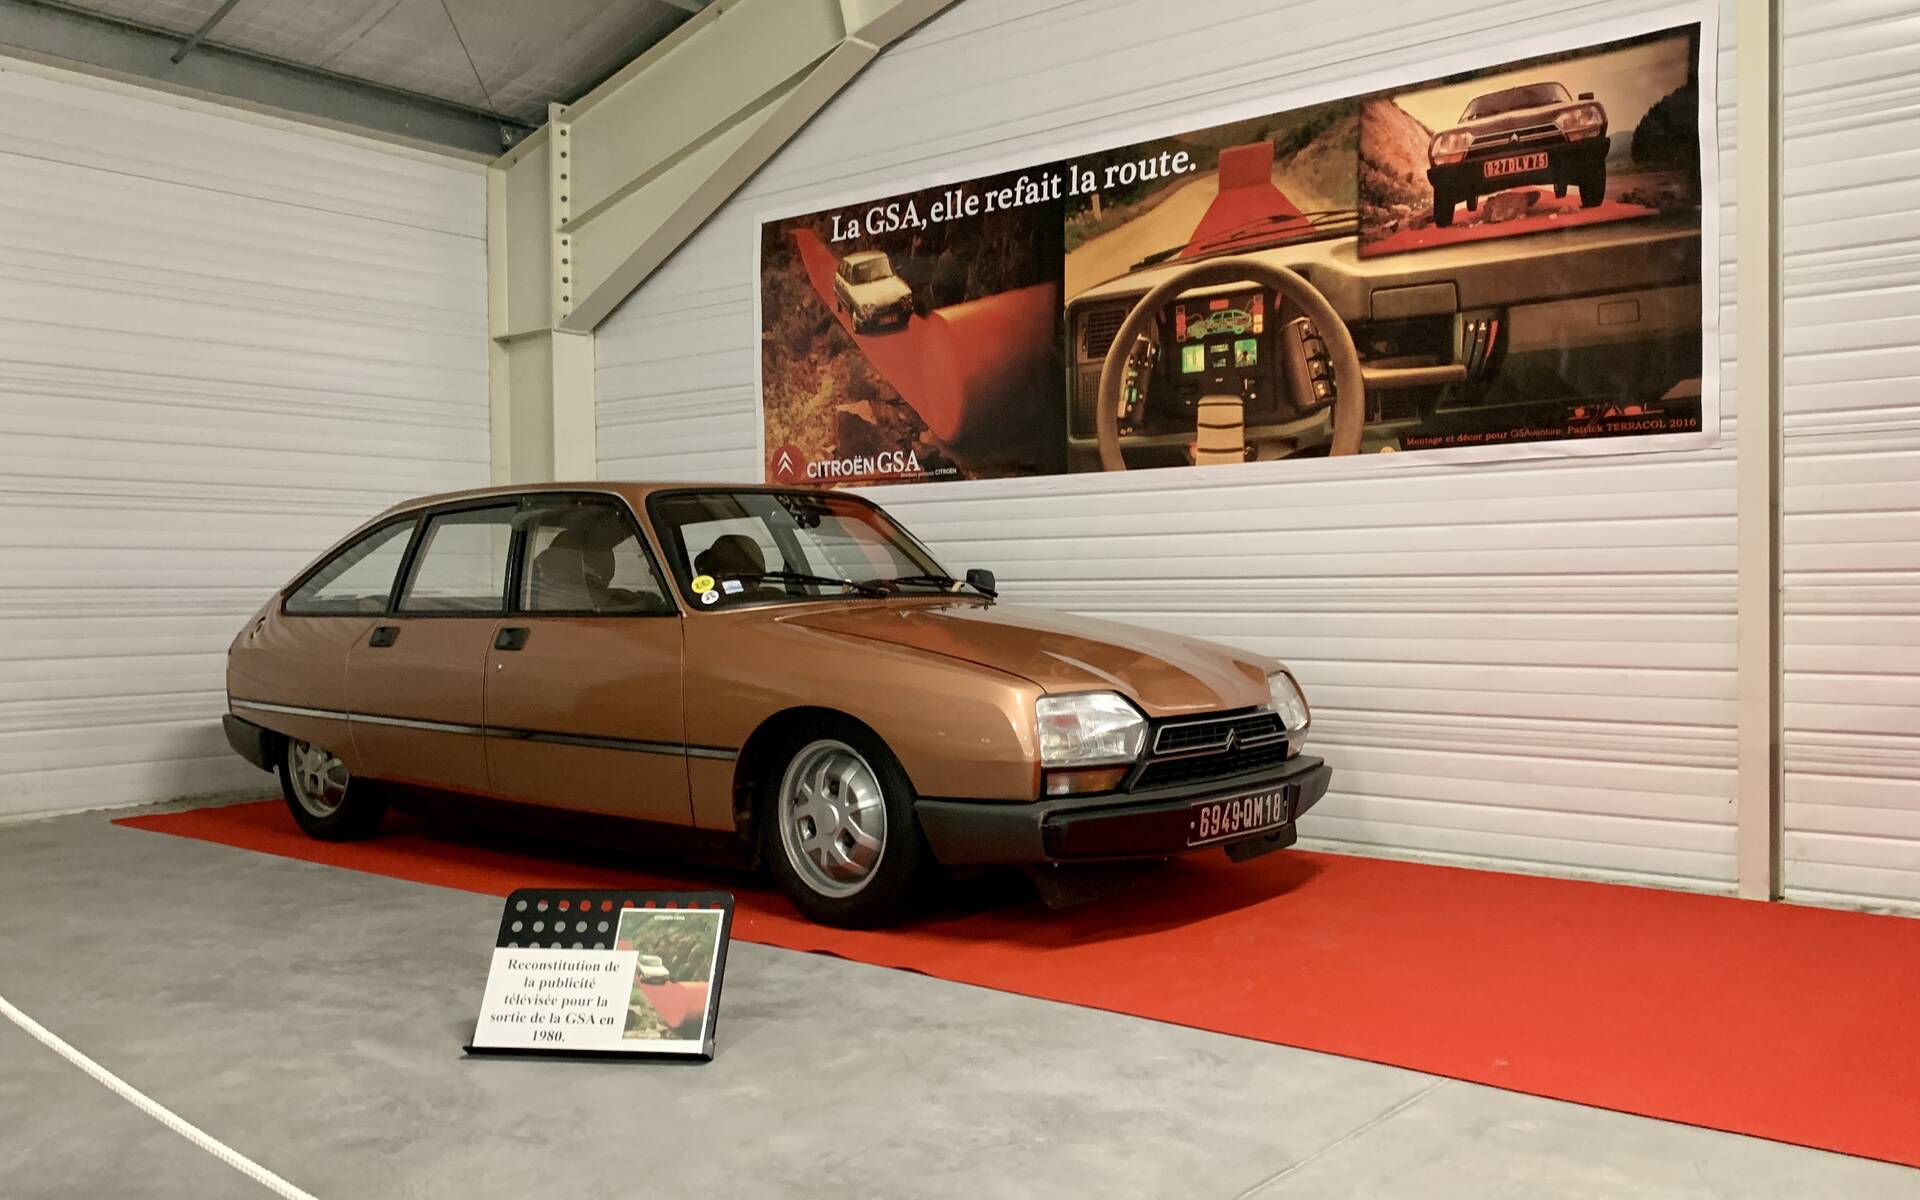 Photos: plus de 100 Citroën d'exception réunies dans un musée en France 543103-photos-plus-de-100-citroen-d-exception-reunies-dans-un-musee-en-france